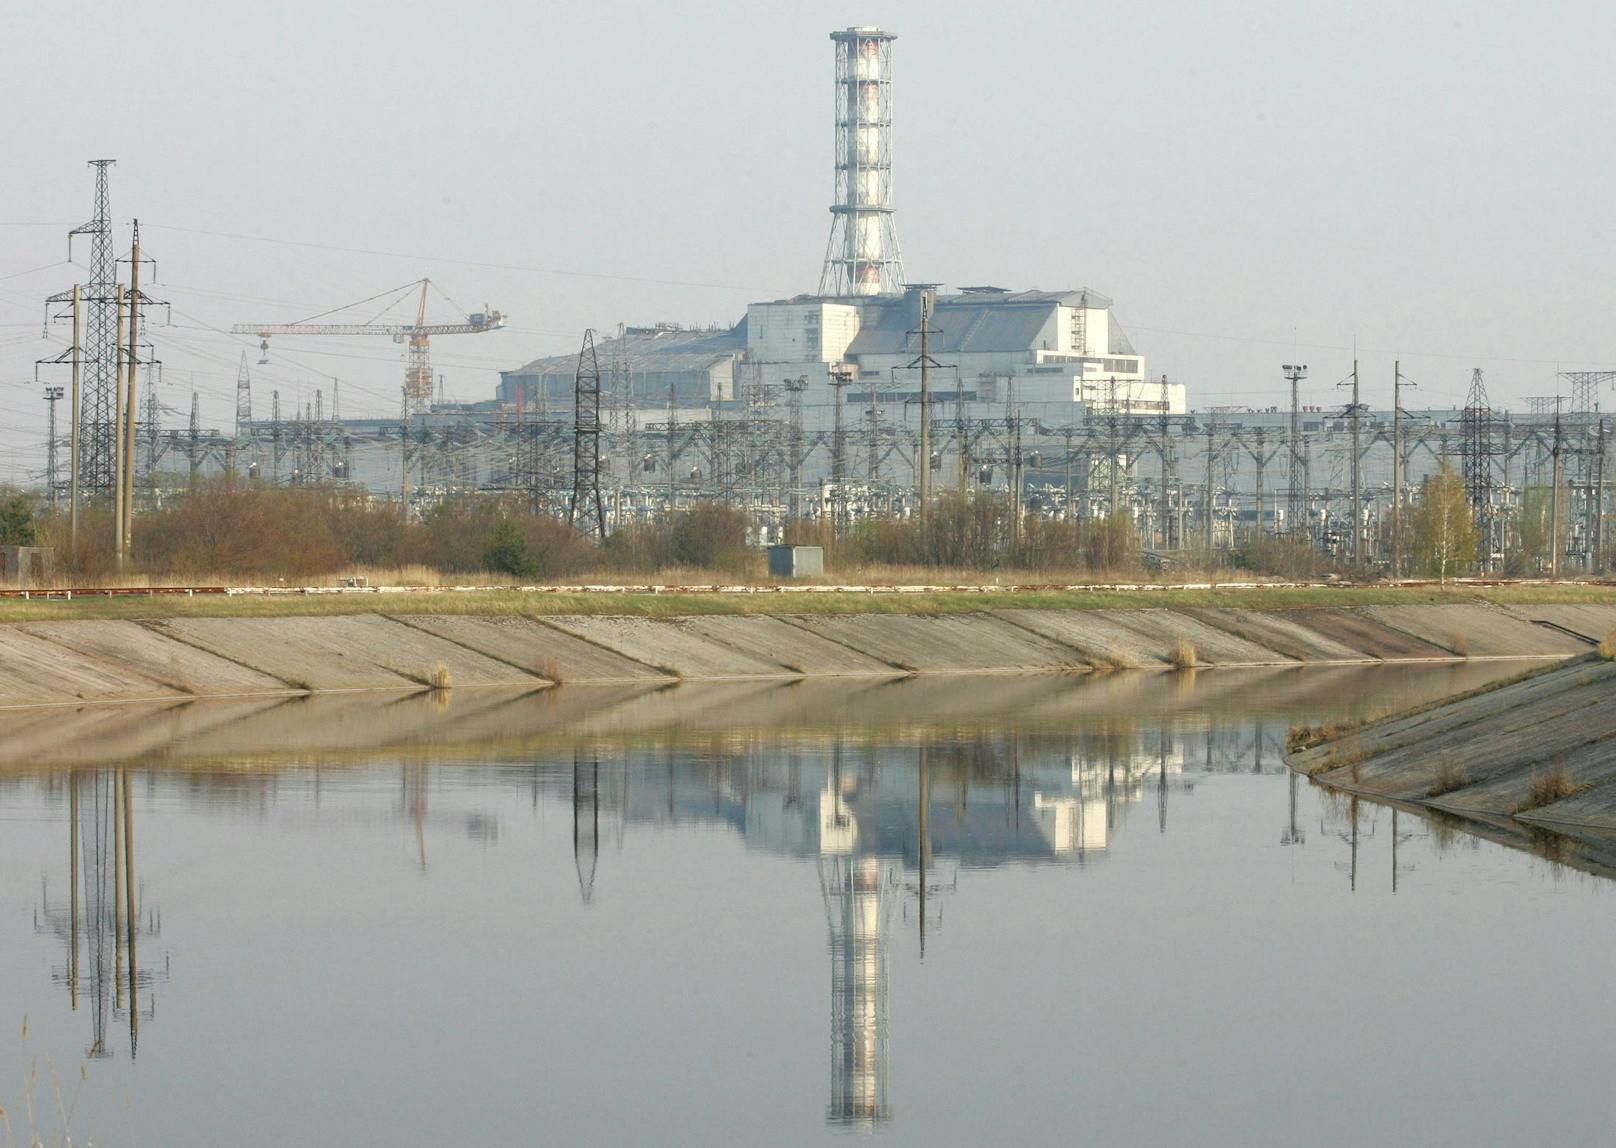 Russische Soldaten haben das Atomkraftwerk Tschernobyl unter ihre Kontrolle gebracht. Die Behörden haben den Kontakt zu dem AKW verloren.